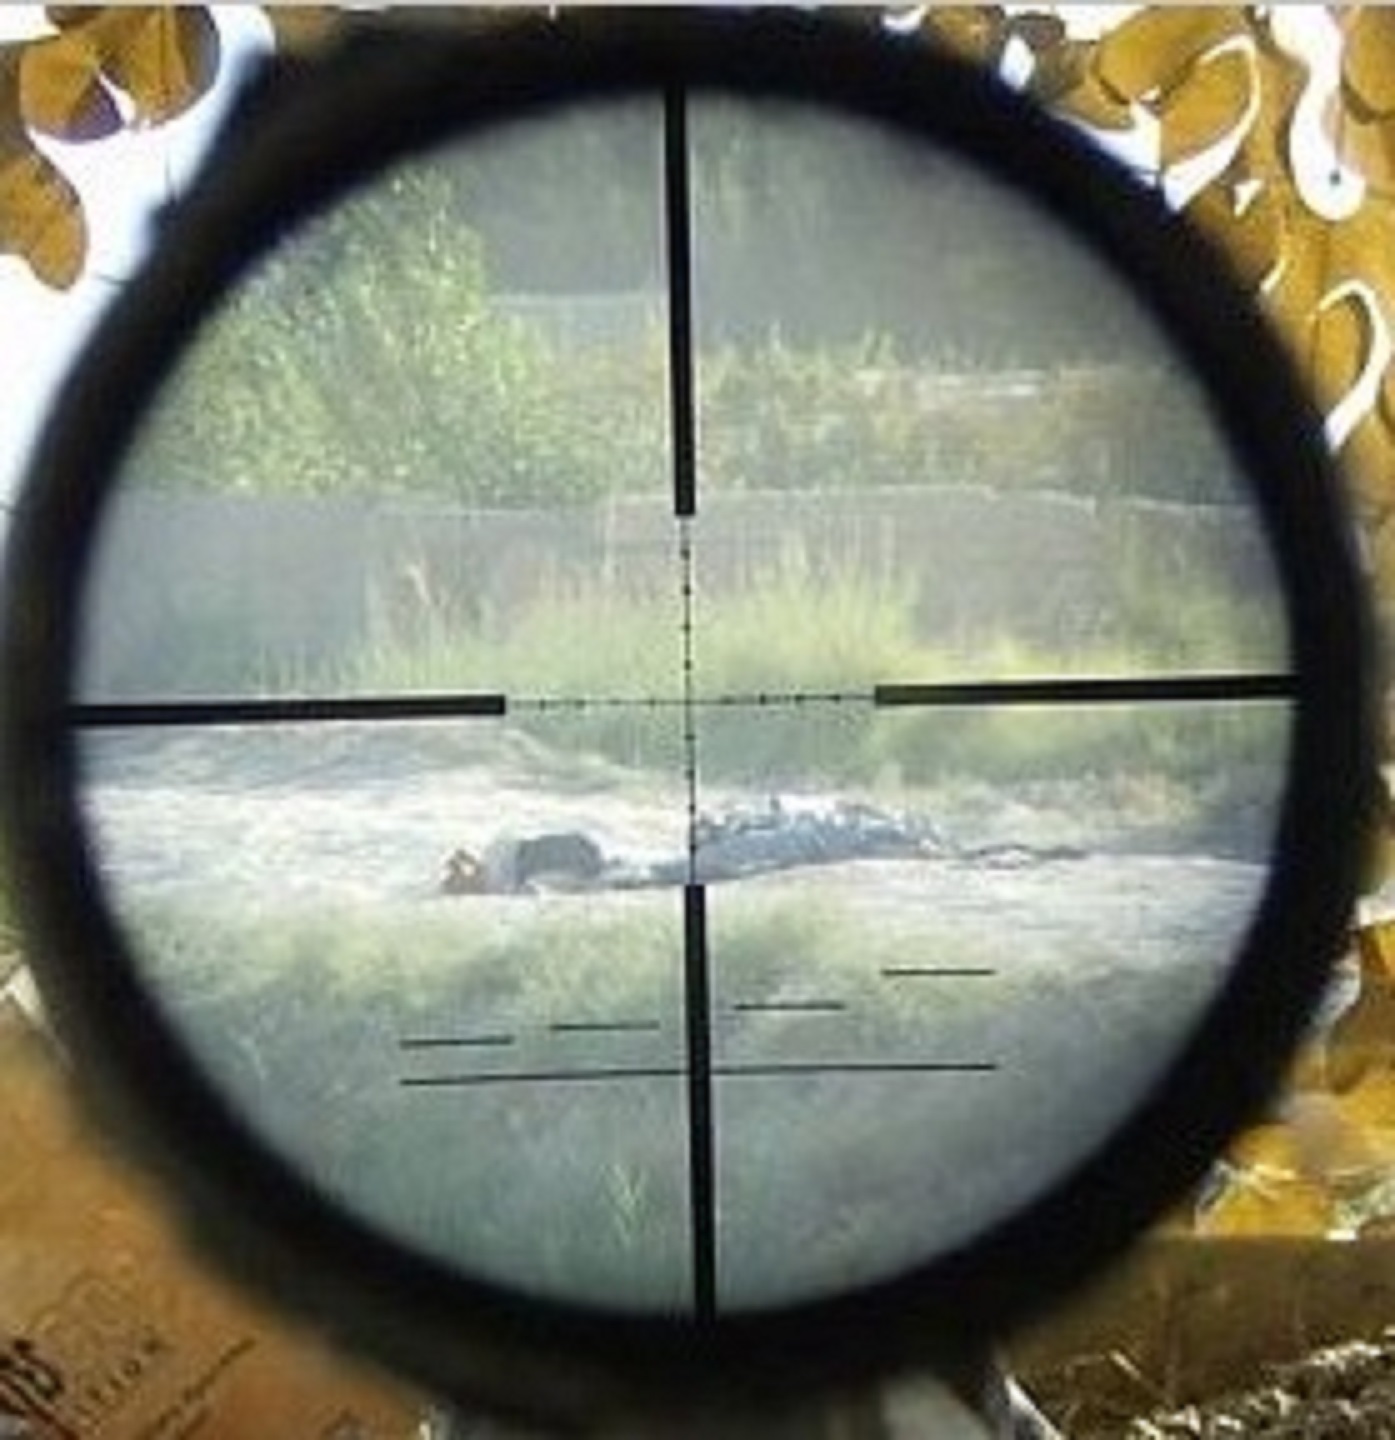 Сбитый прицел. Оптический прицел снайпер. BSA снайперский прицел. Прицел тепляк 35. Вид в оптический прицел снайперской винтовки.